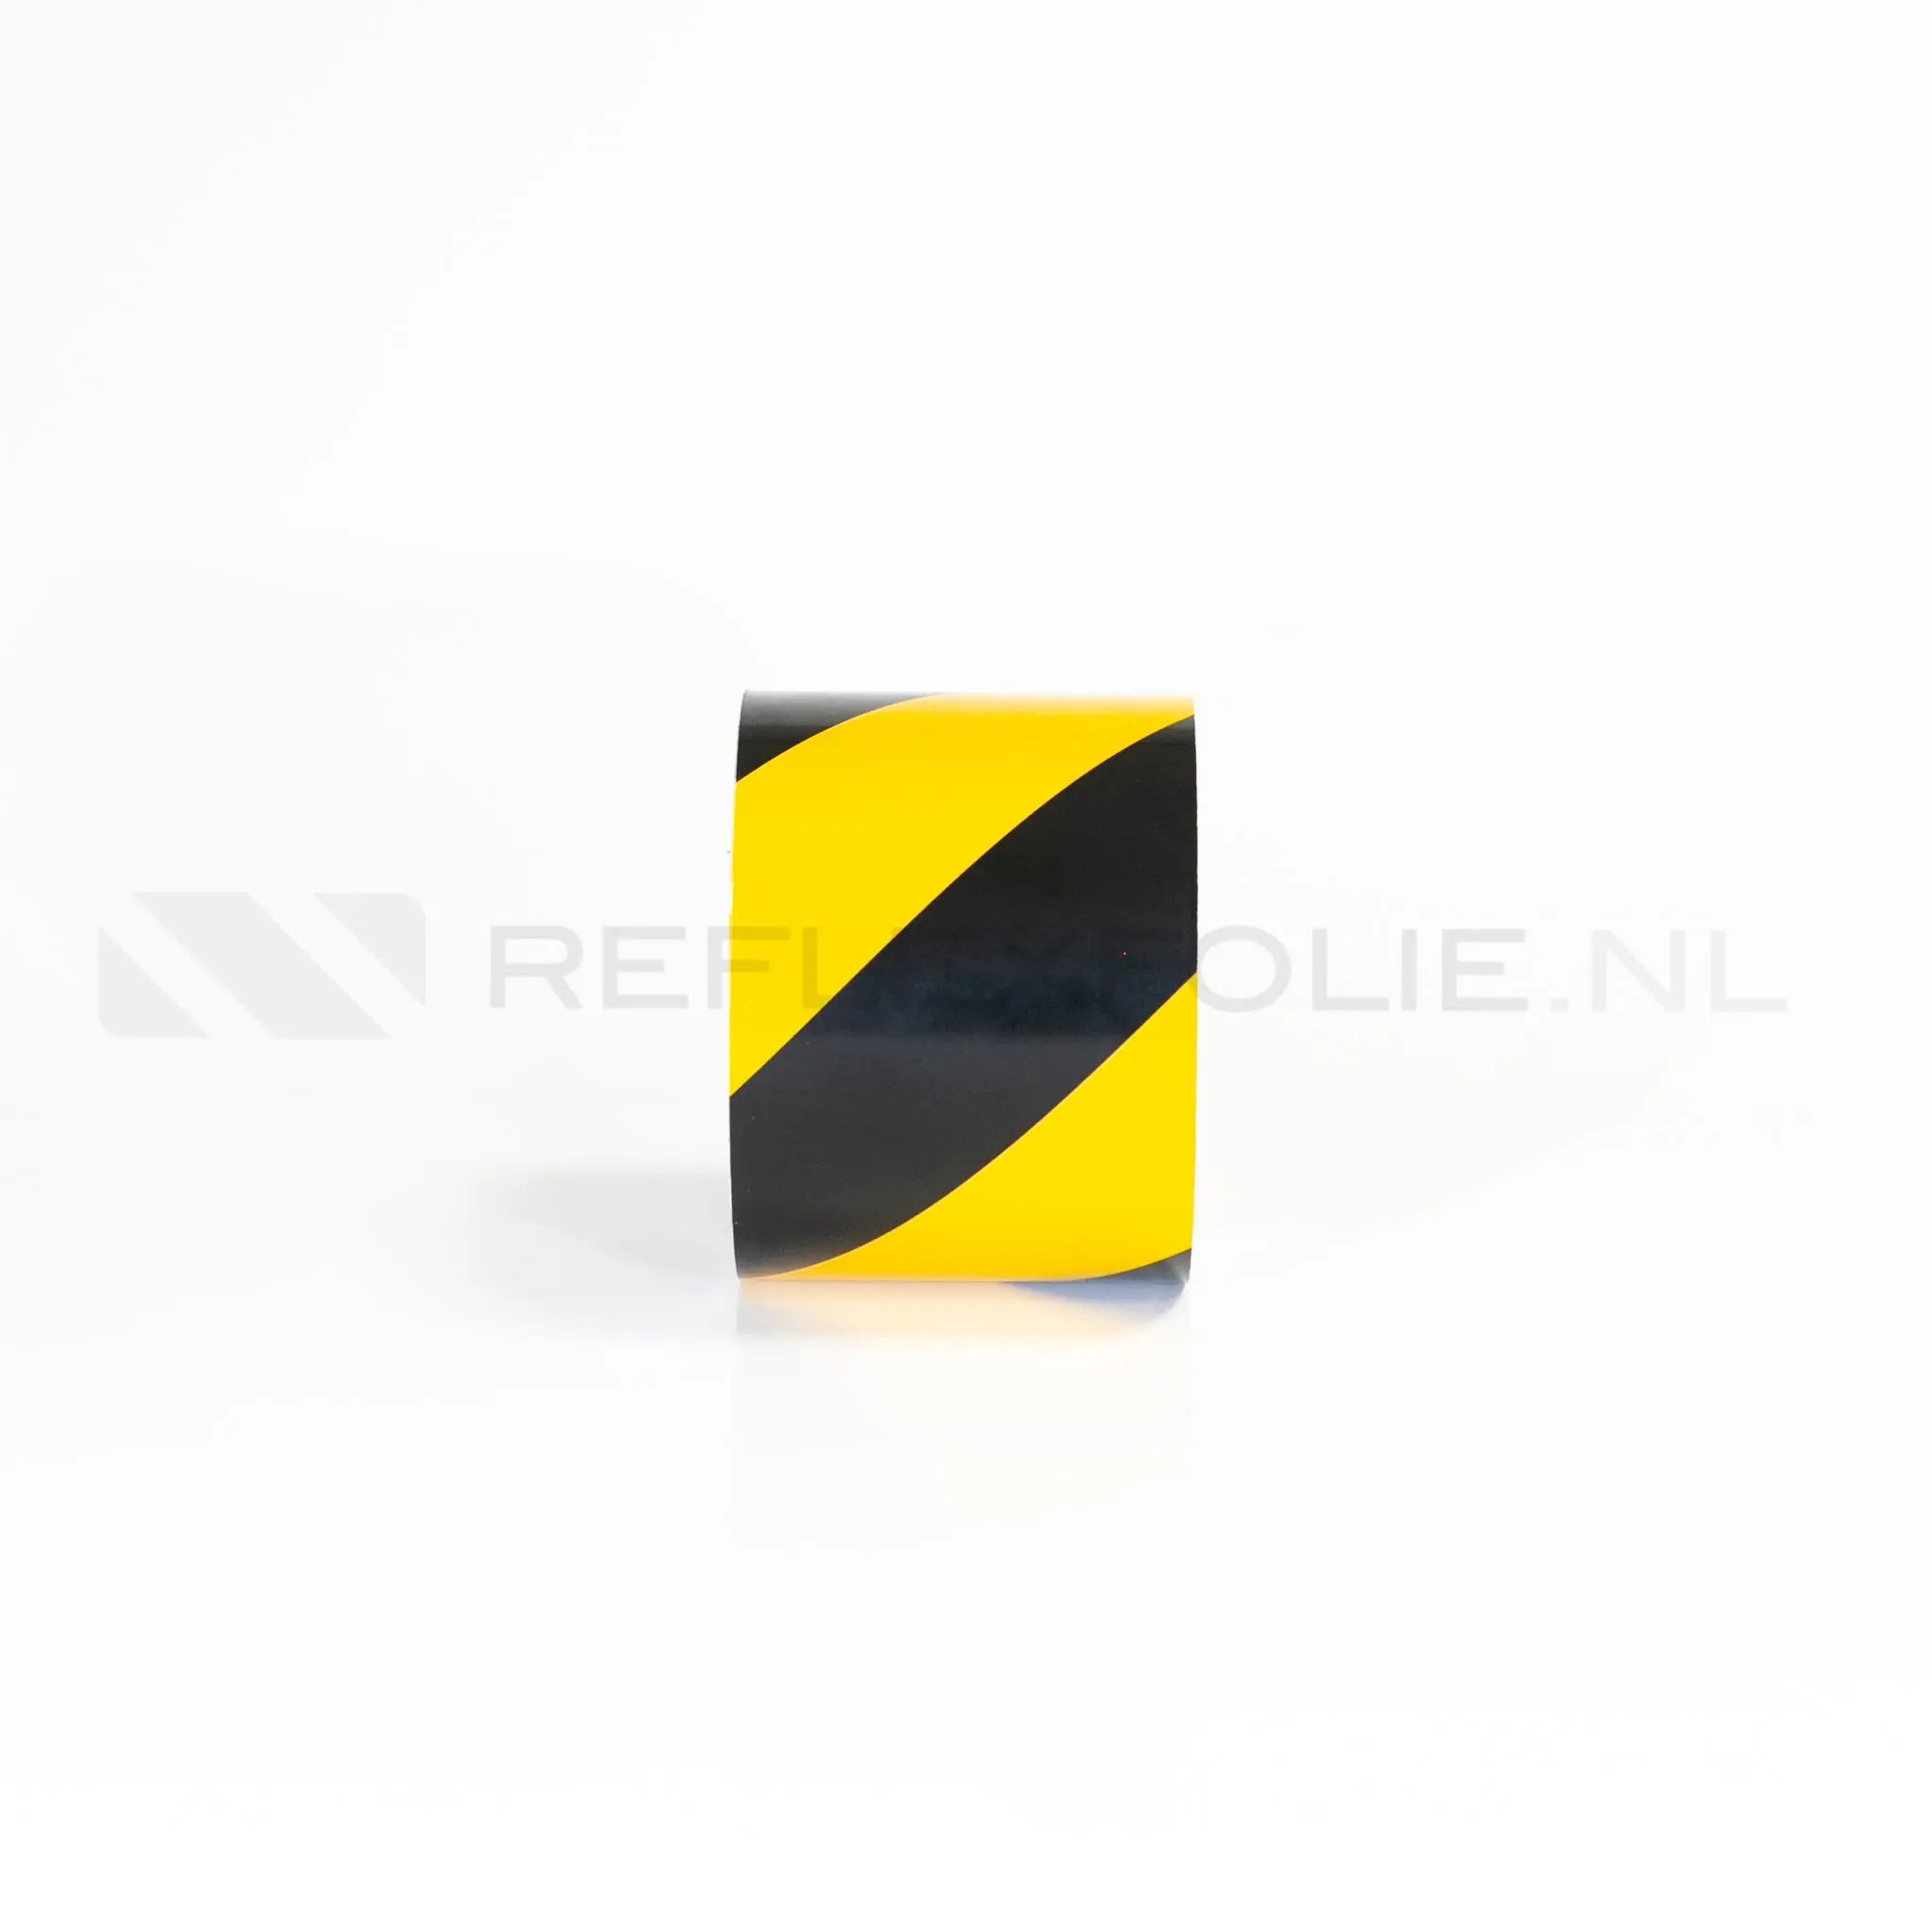 Markeringsband geel/zwart linkswijzend 100 mm per meter - Reflexfolie